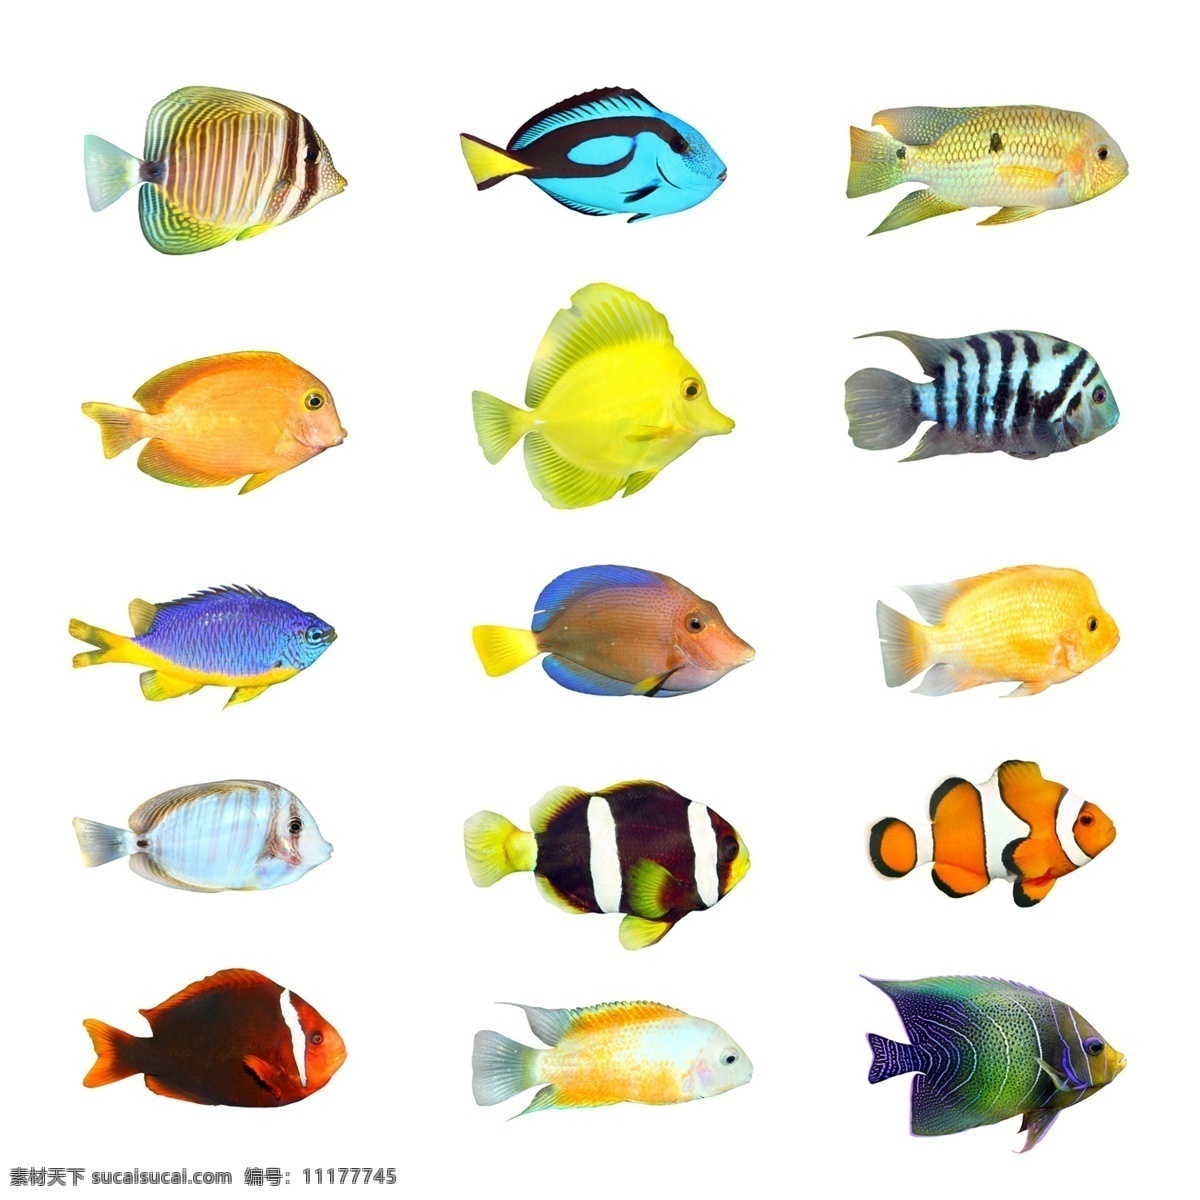 动物世界 热带鱼 鱼 彩色的鱼 动物 水世界 生物世界 野生动物